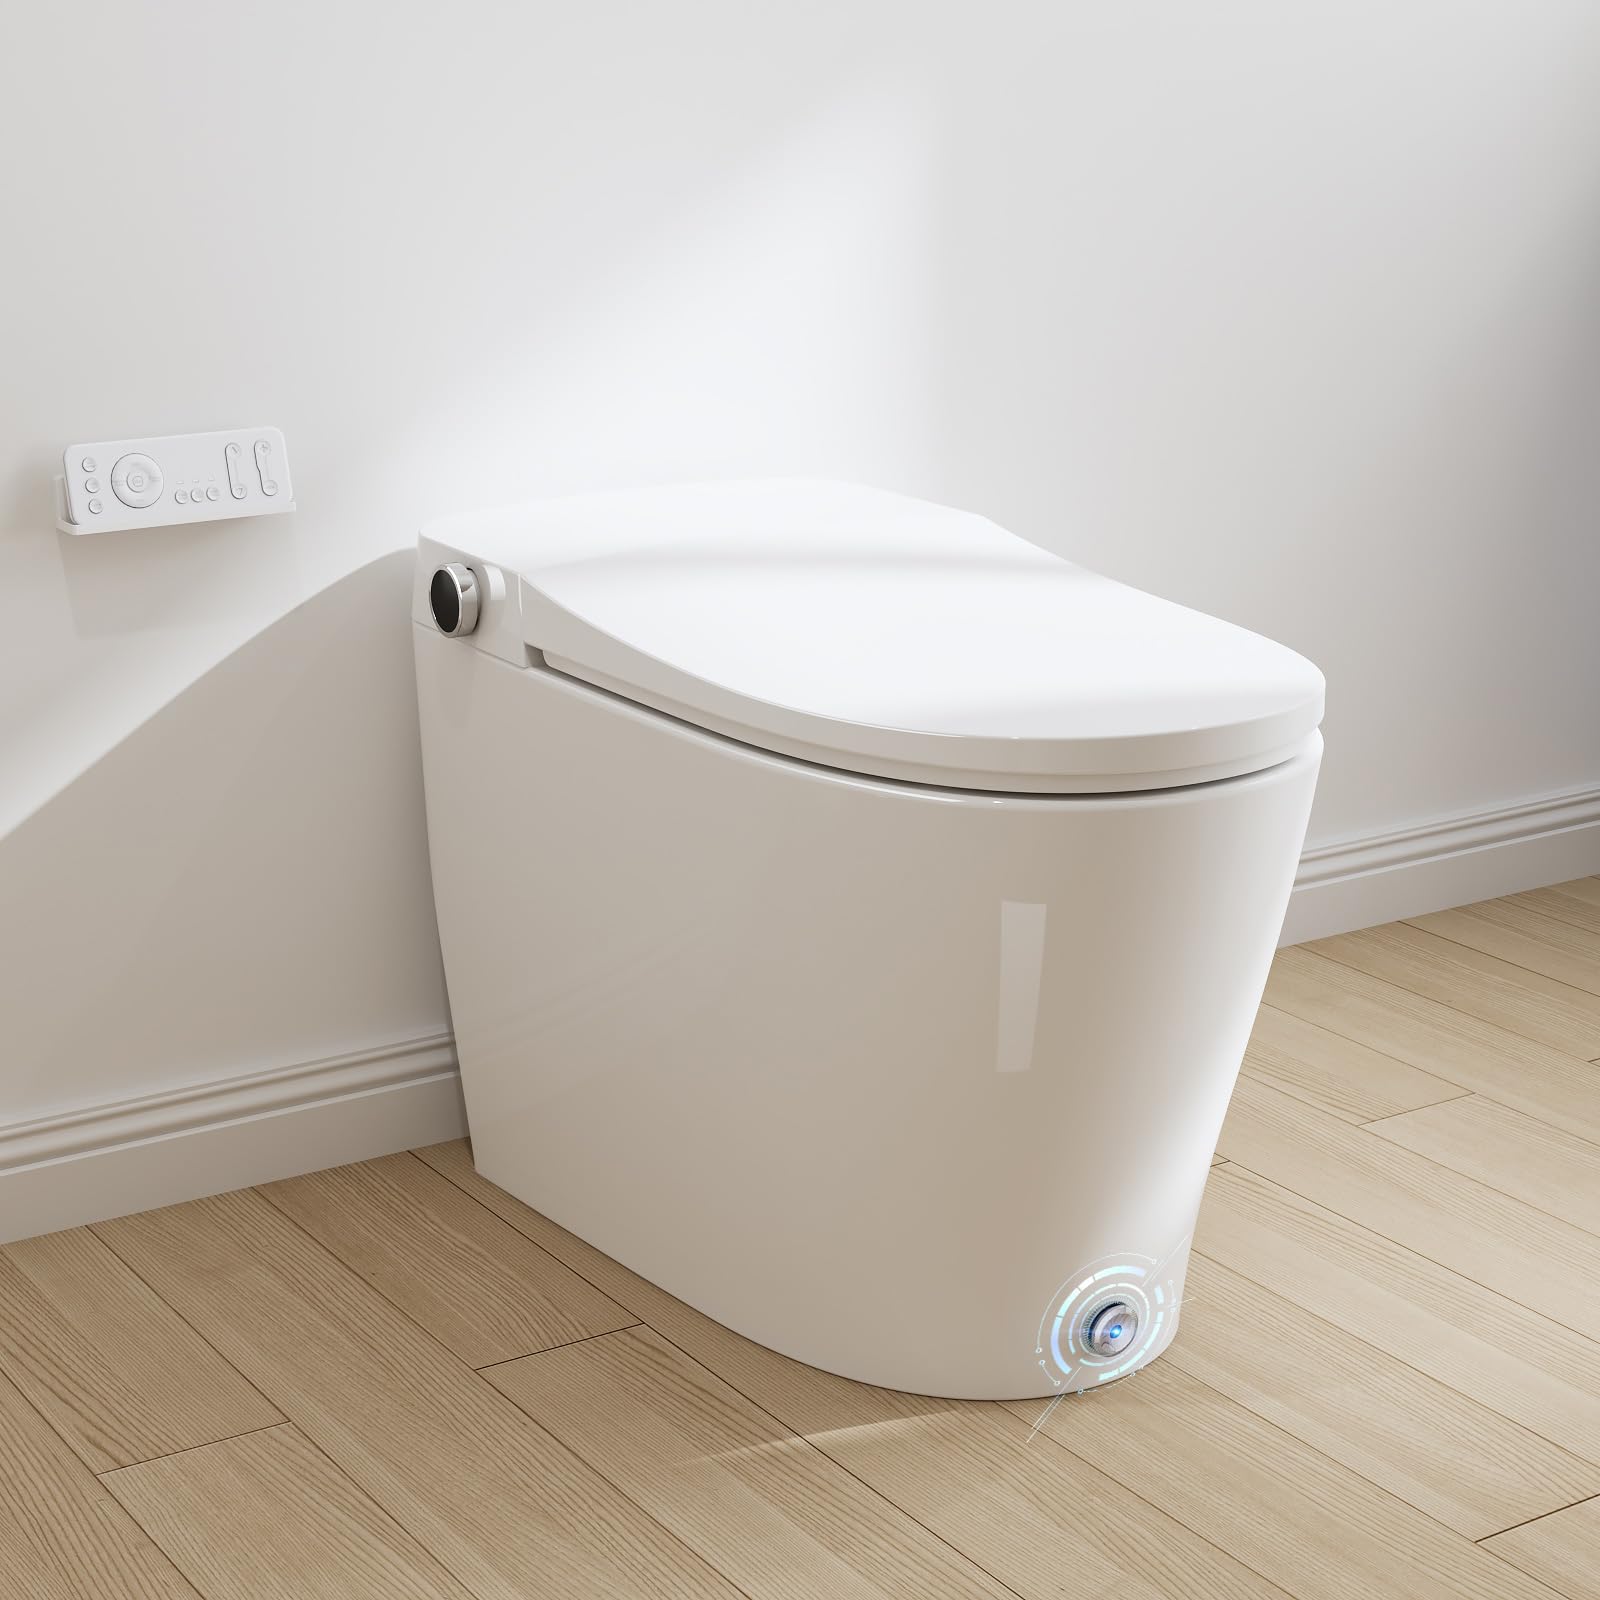 HOROW Luxury Smart Toilet